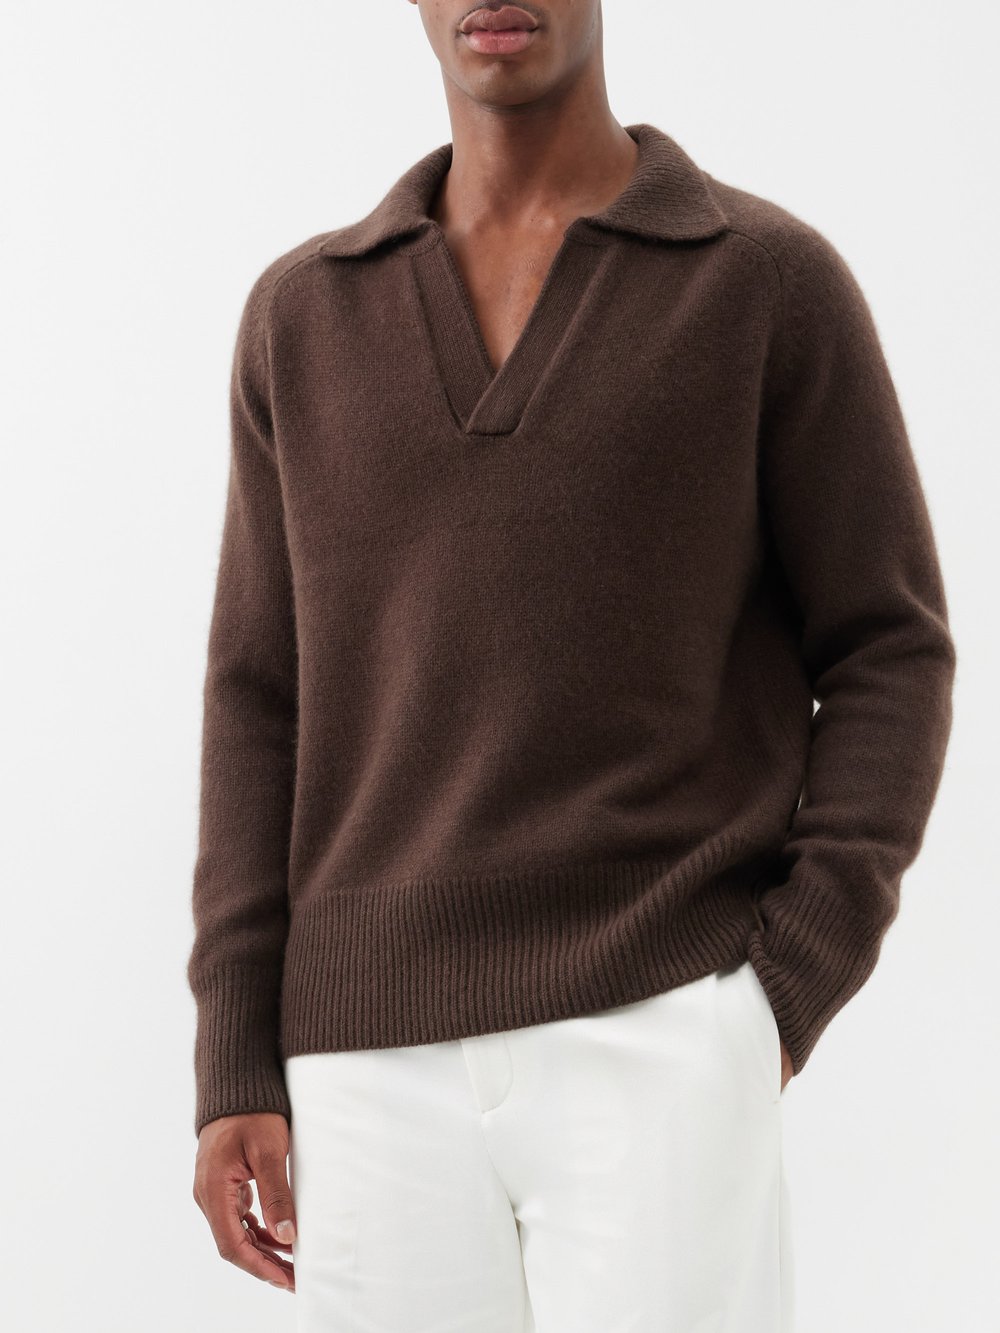 цена Кашемировый свитер mr clifton gate с v-образным вырезом Arch4, серый